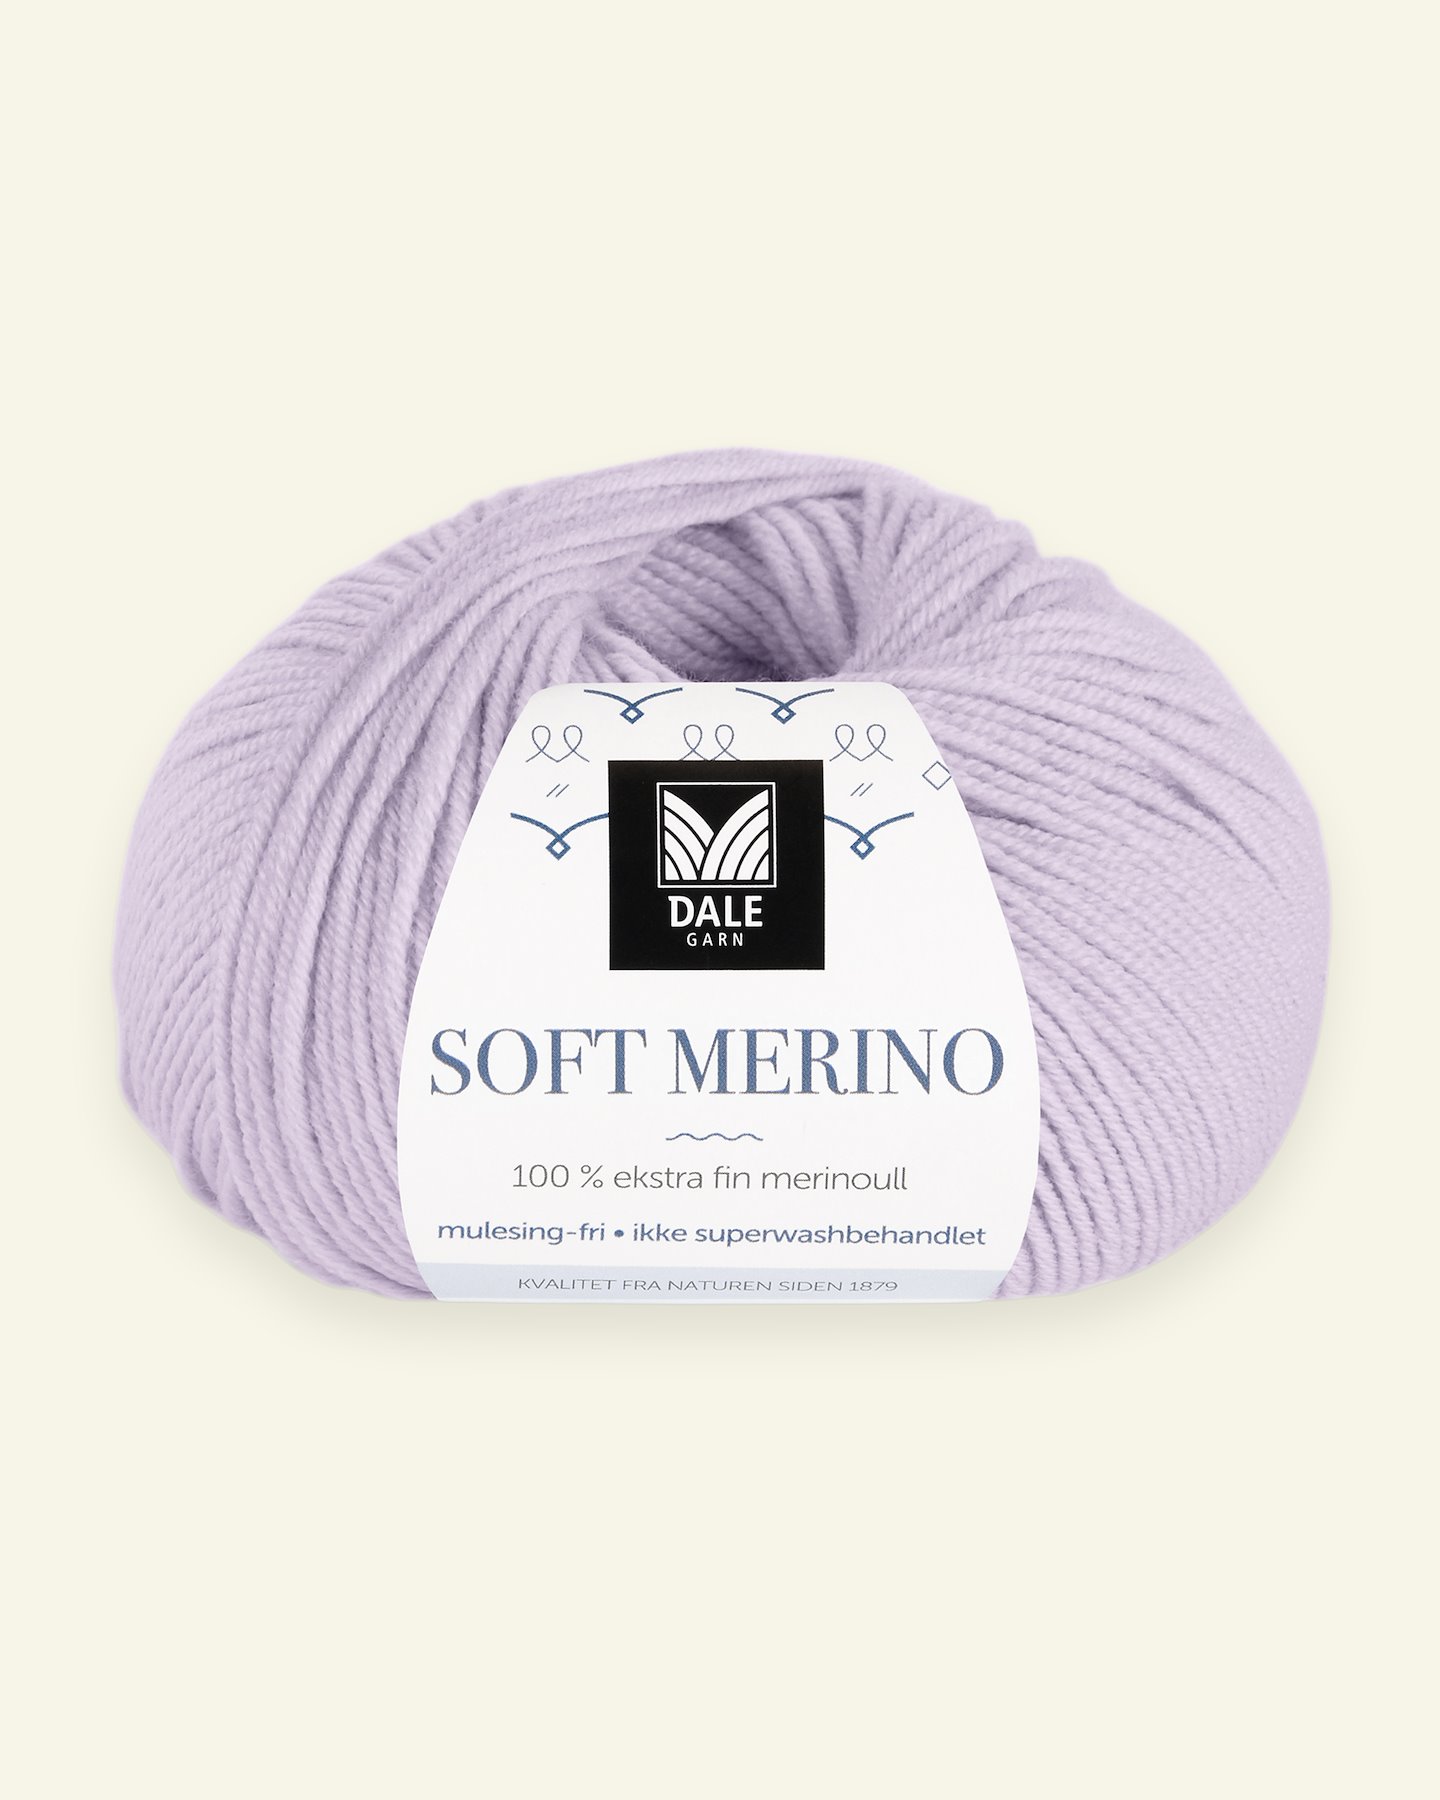 Dale Garn, 100% Extrafeine Merino-Wolle "Soft Merino", helllila (3039) 90000360_pack